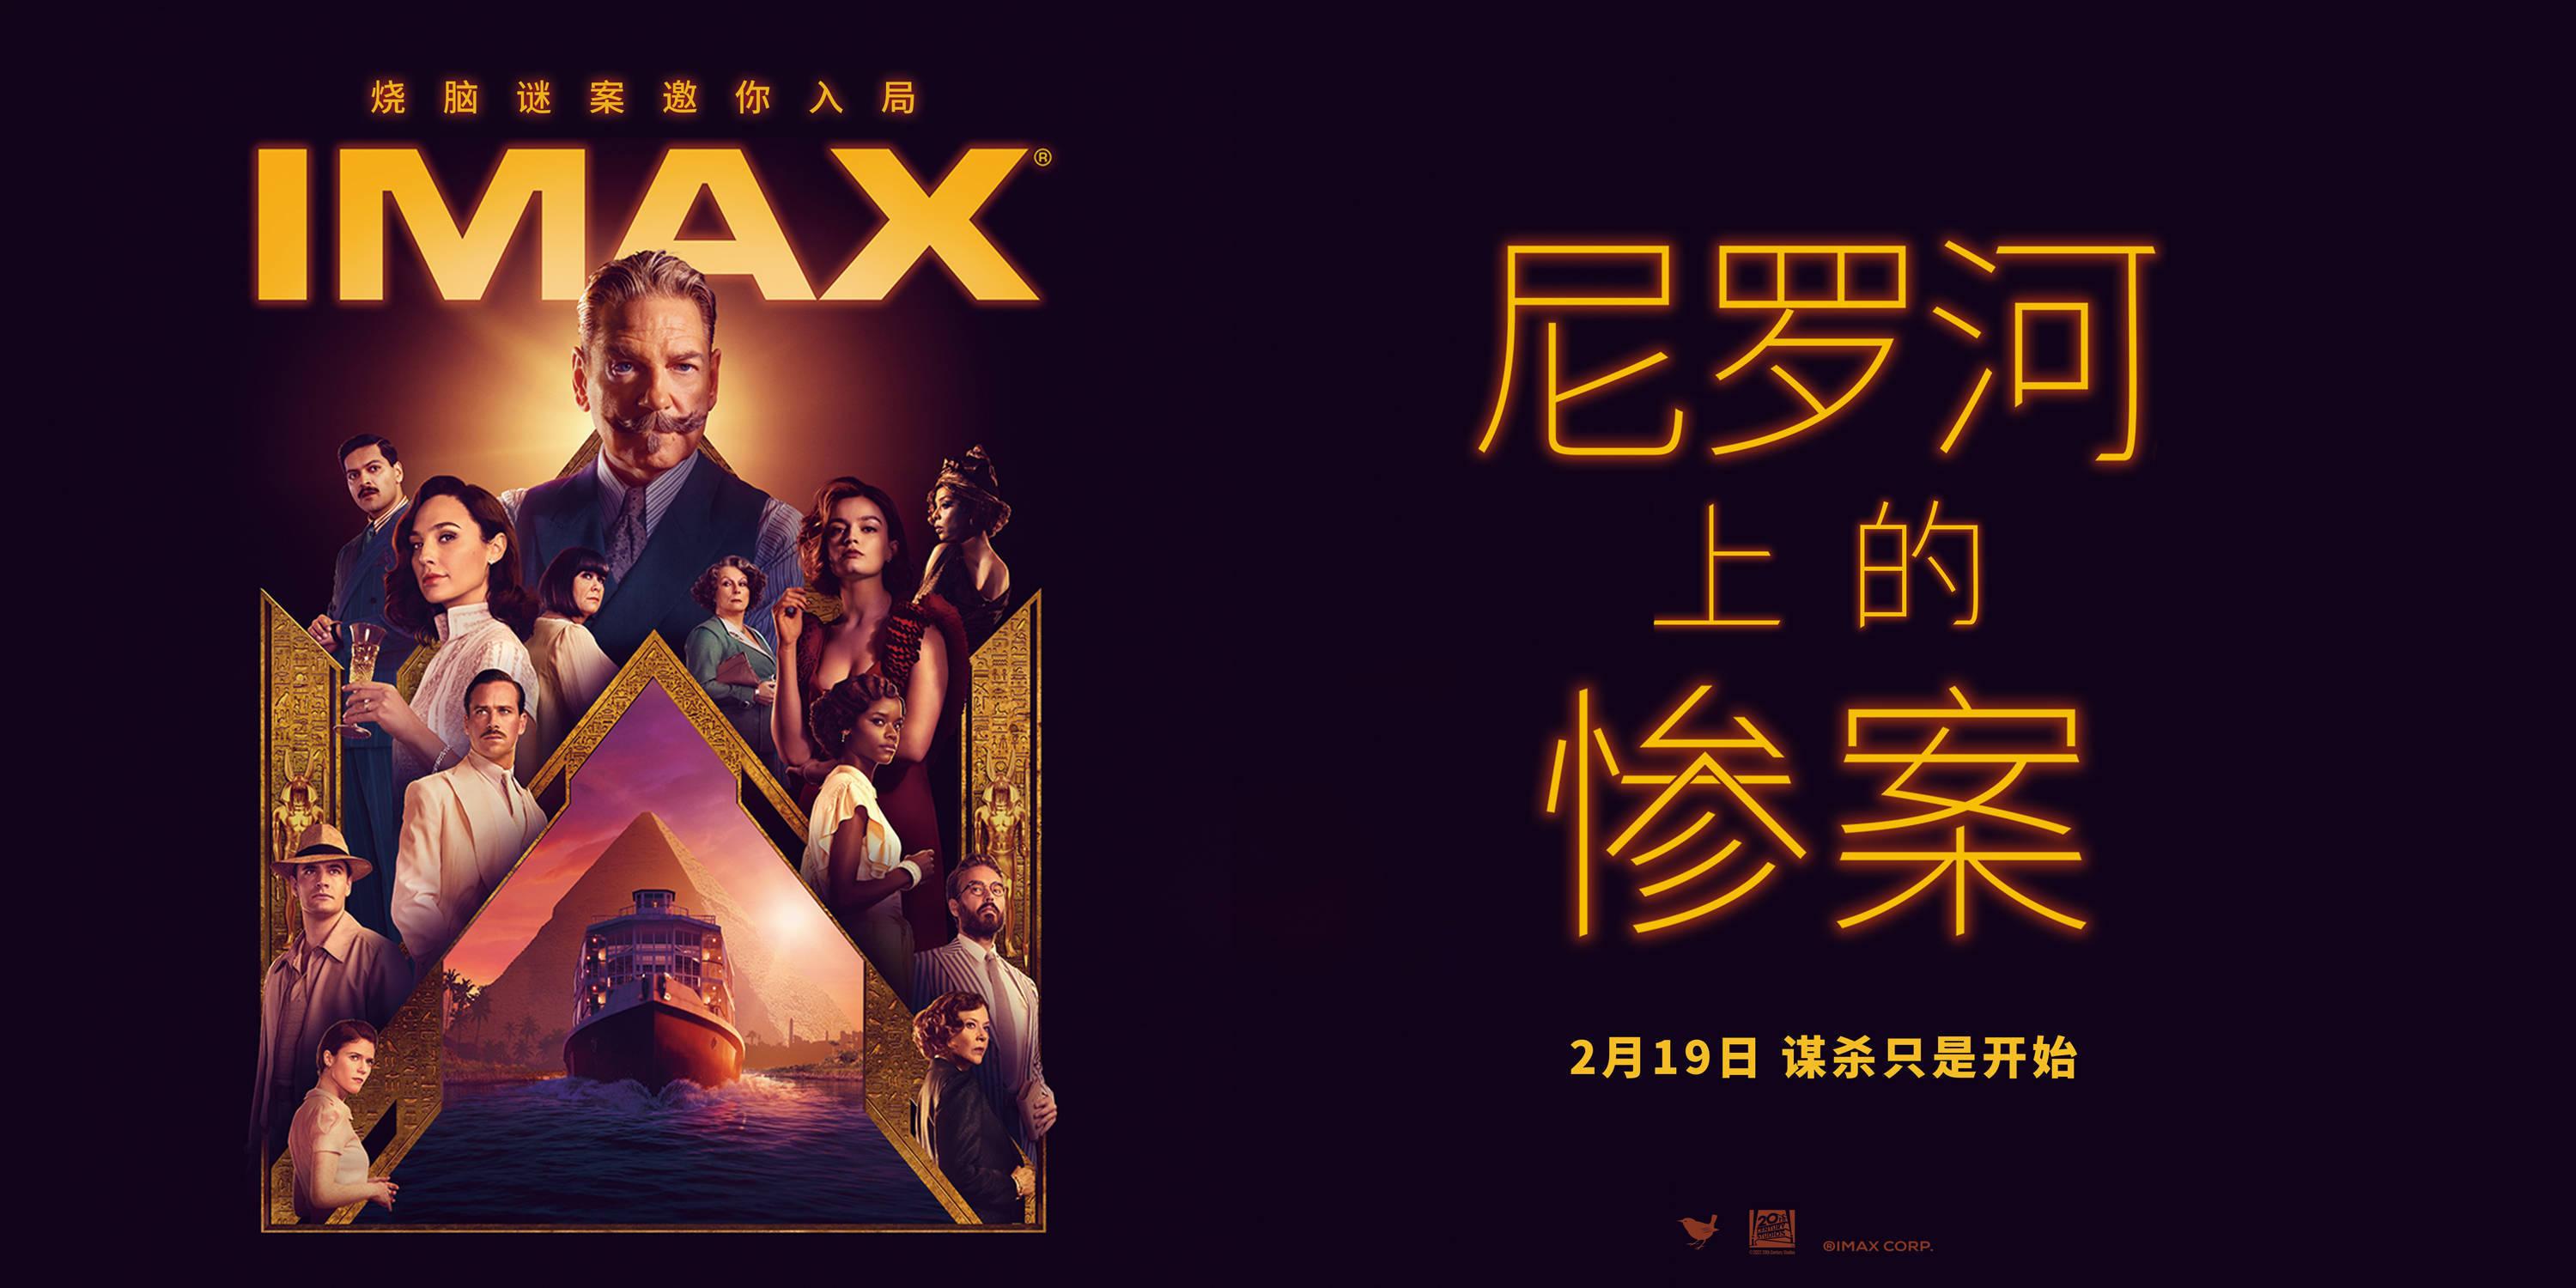 IMAX曝《尼罗河上的惨案》导演推荐特辑 盖尔-加朵领衔全明星演绎悬疑推理经典